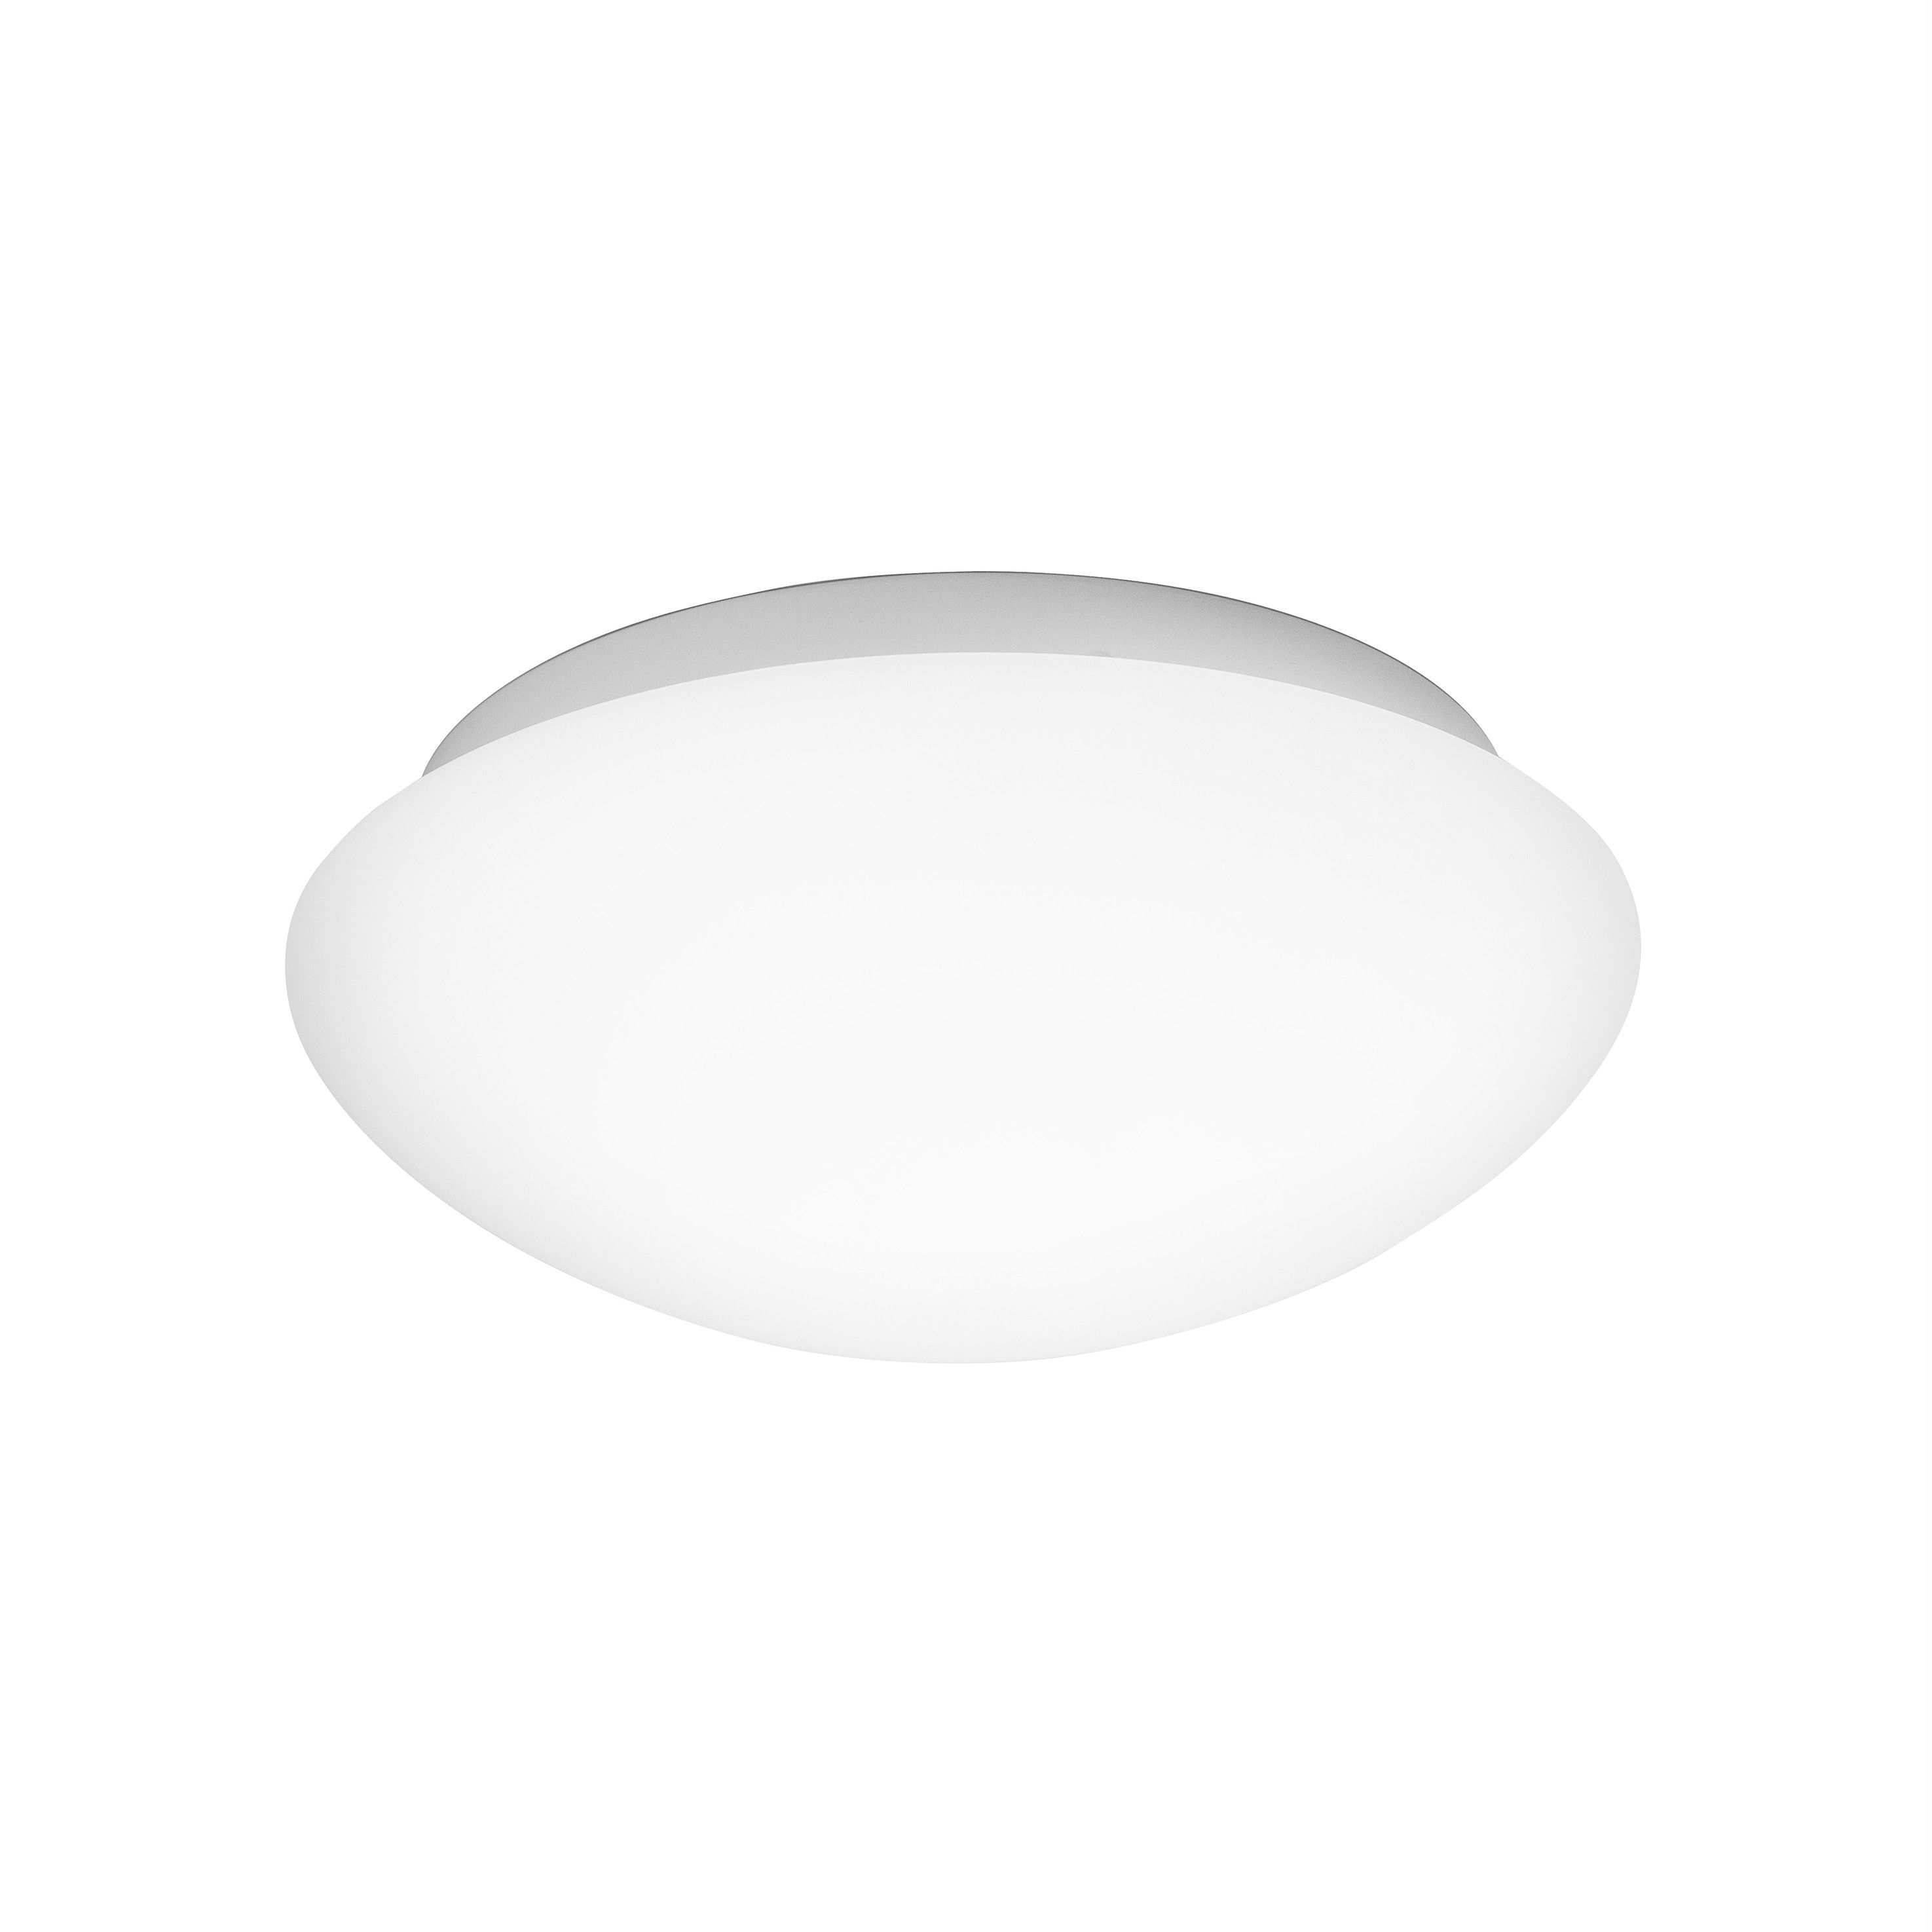 Origineel Gentleman vriendelijk vervangen Nova Luce Brest - plafondlamp badkamer - Ø 30 x 11 cm - IP44 - wit |  Lichtkoning